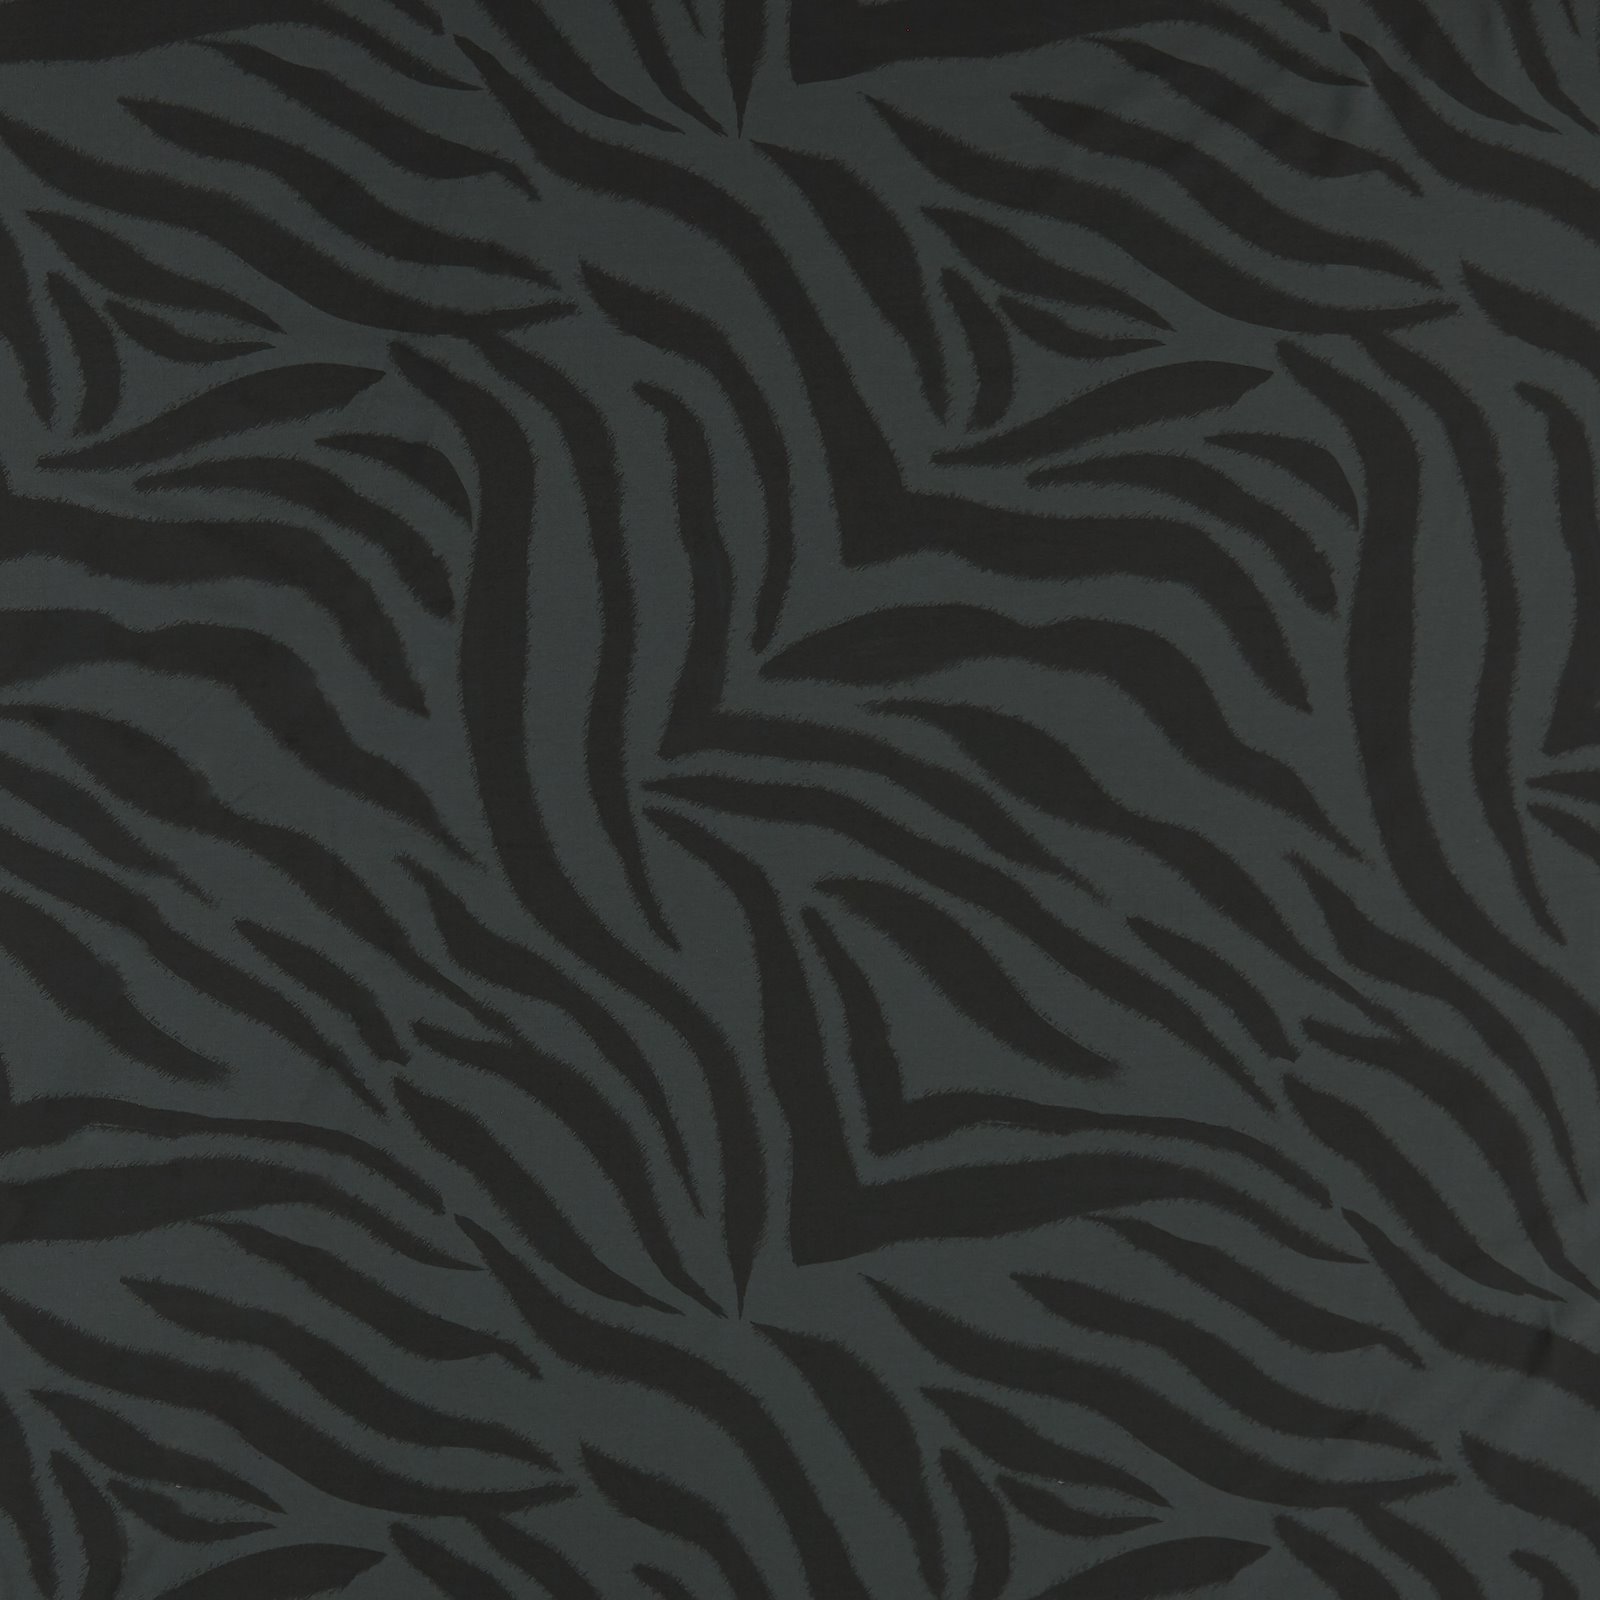 BCI str jersey mørk grå m zebra striber 273168_pack_sp